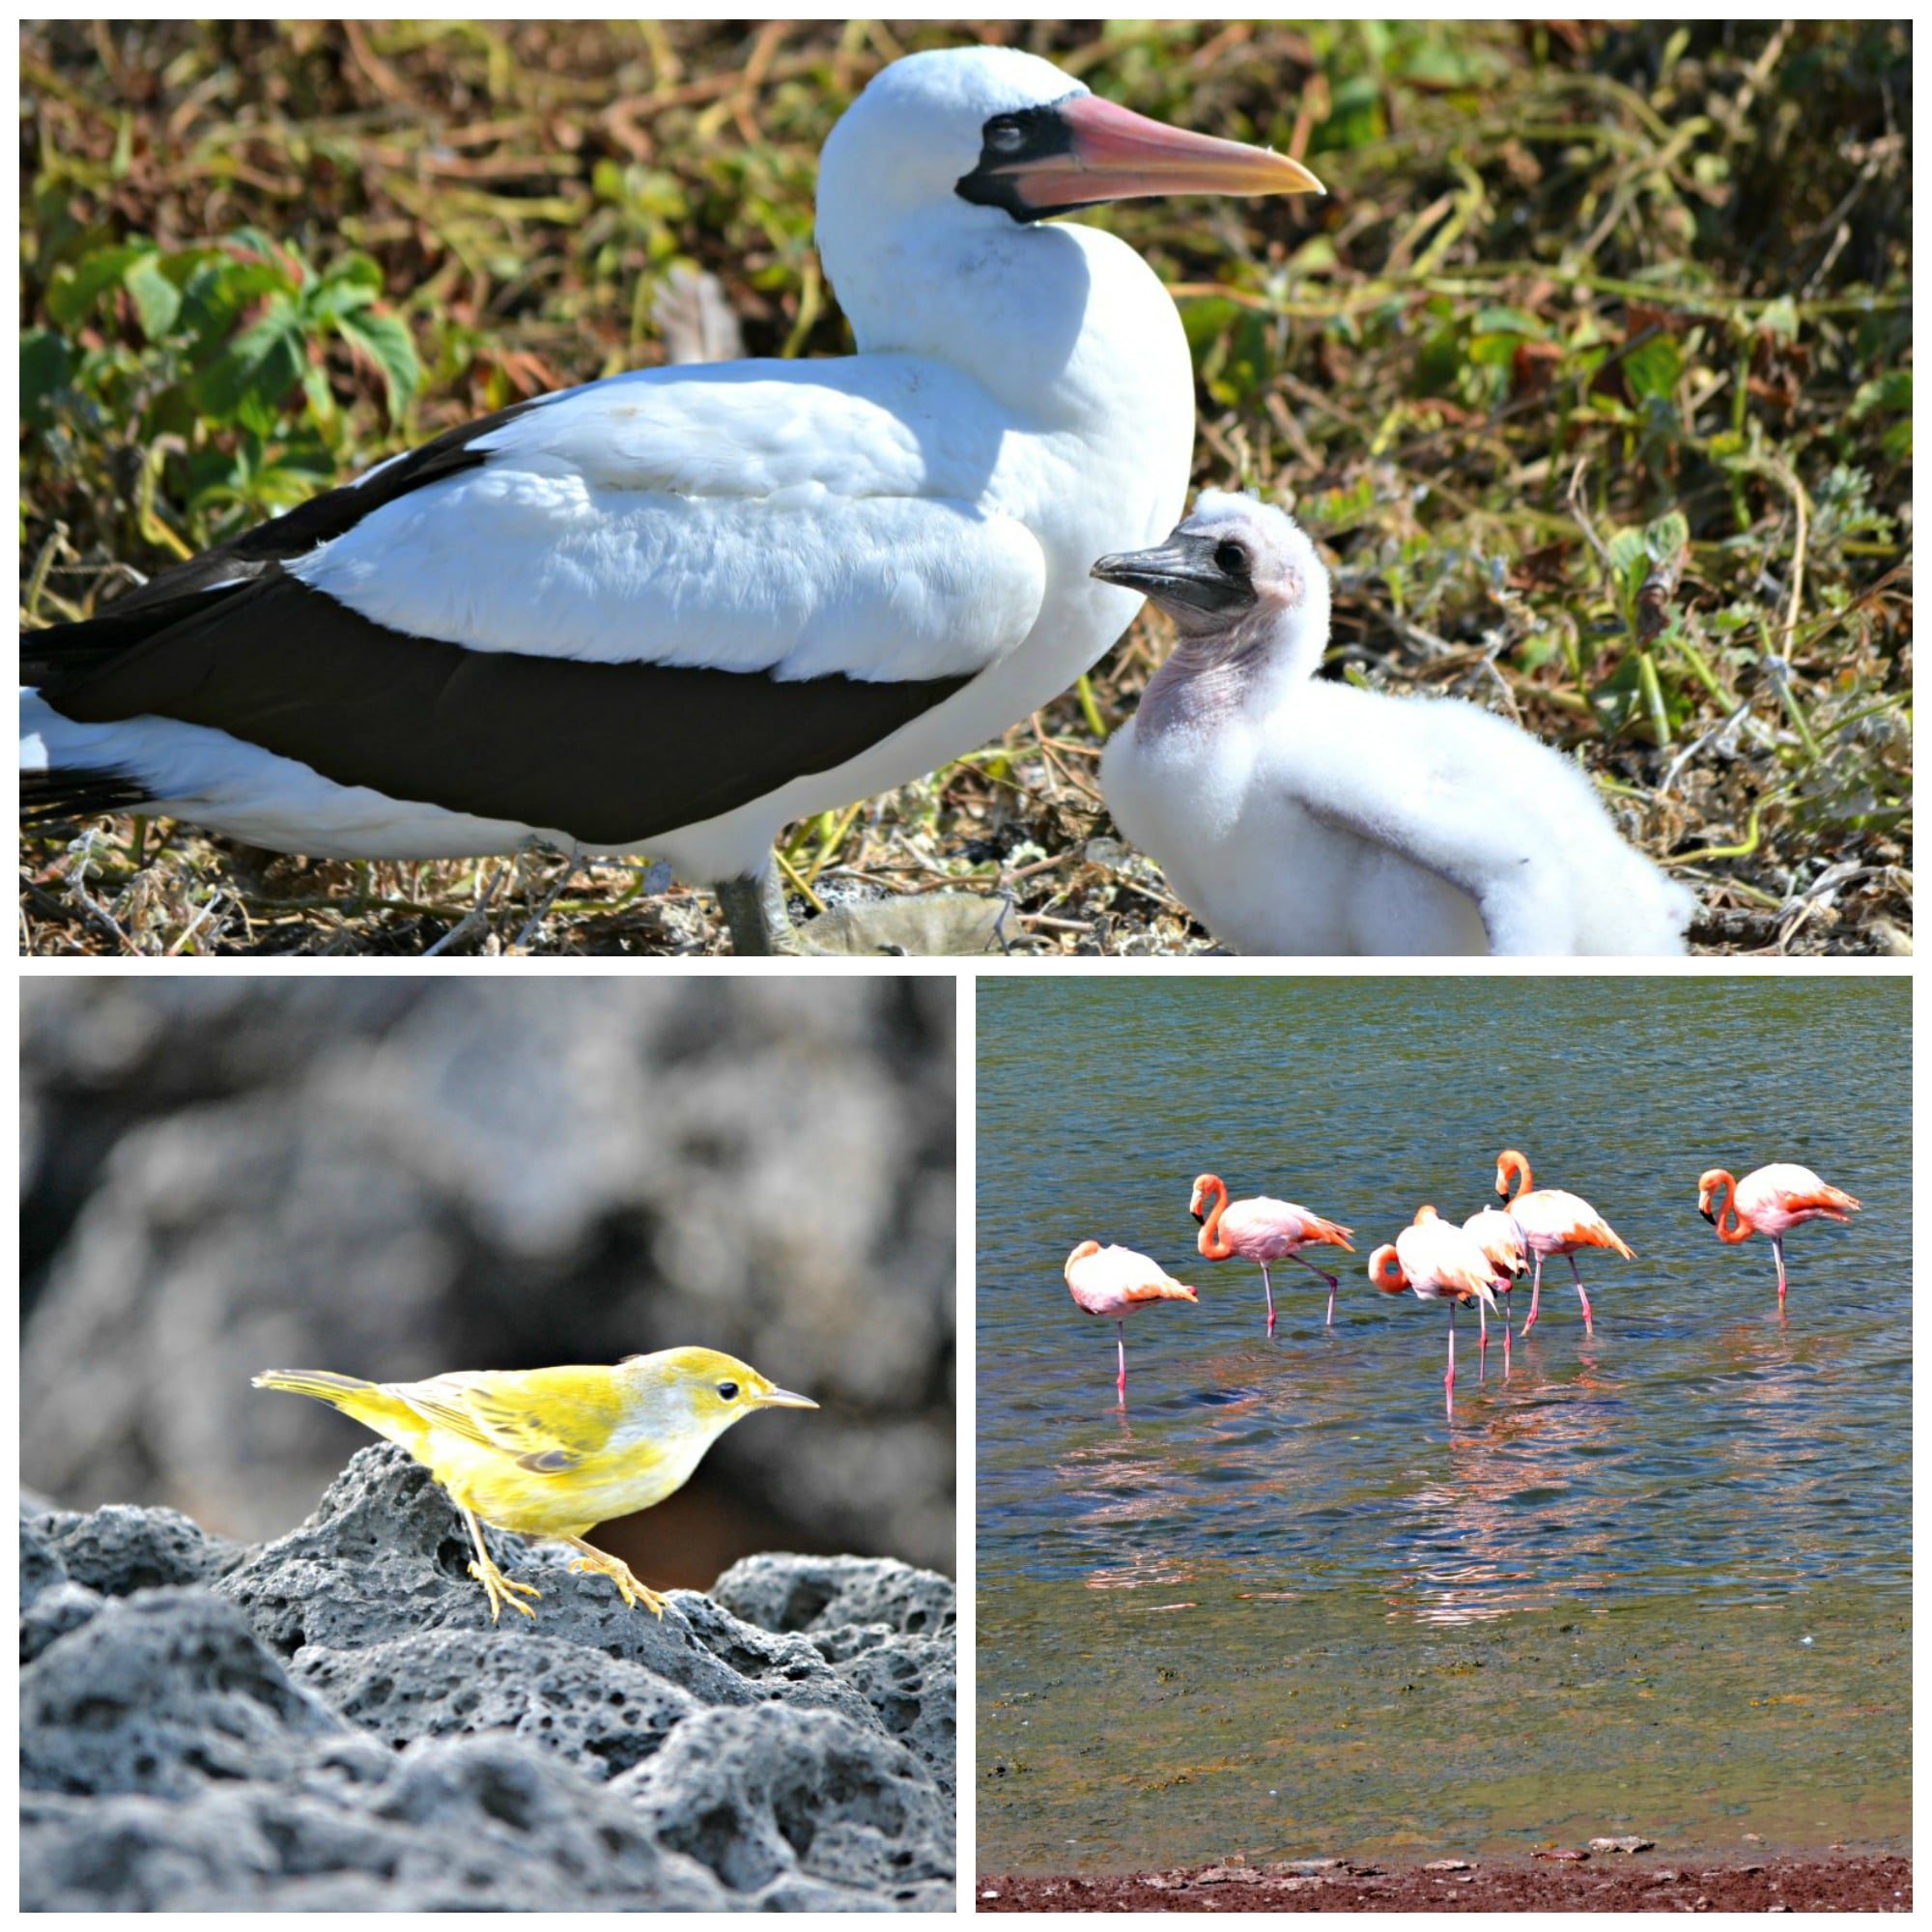 Nazca boobies, flamingos and a yellow warbler